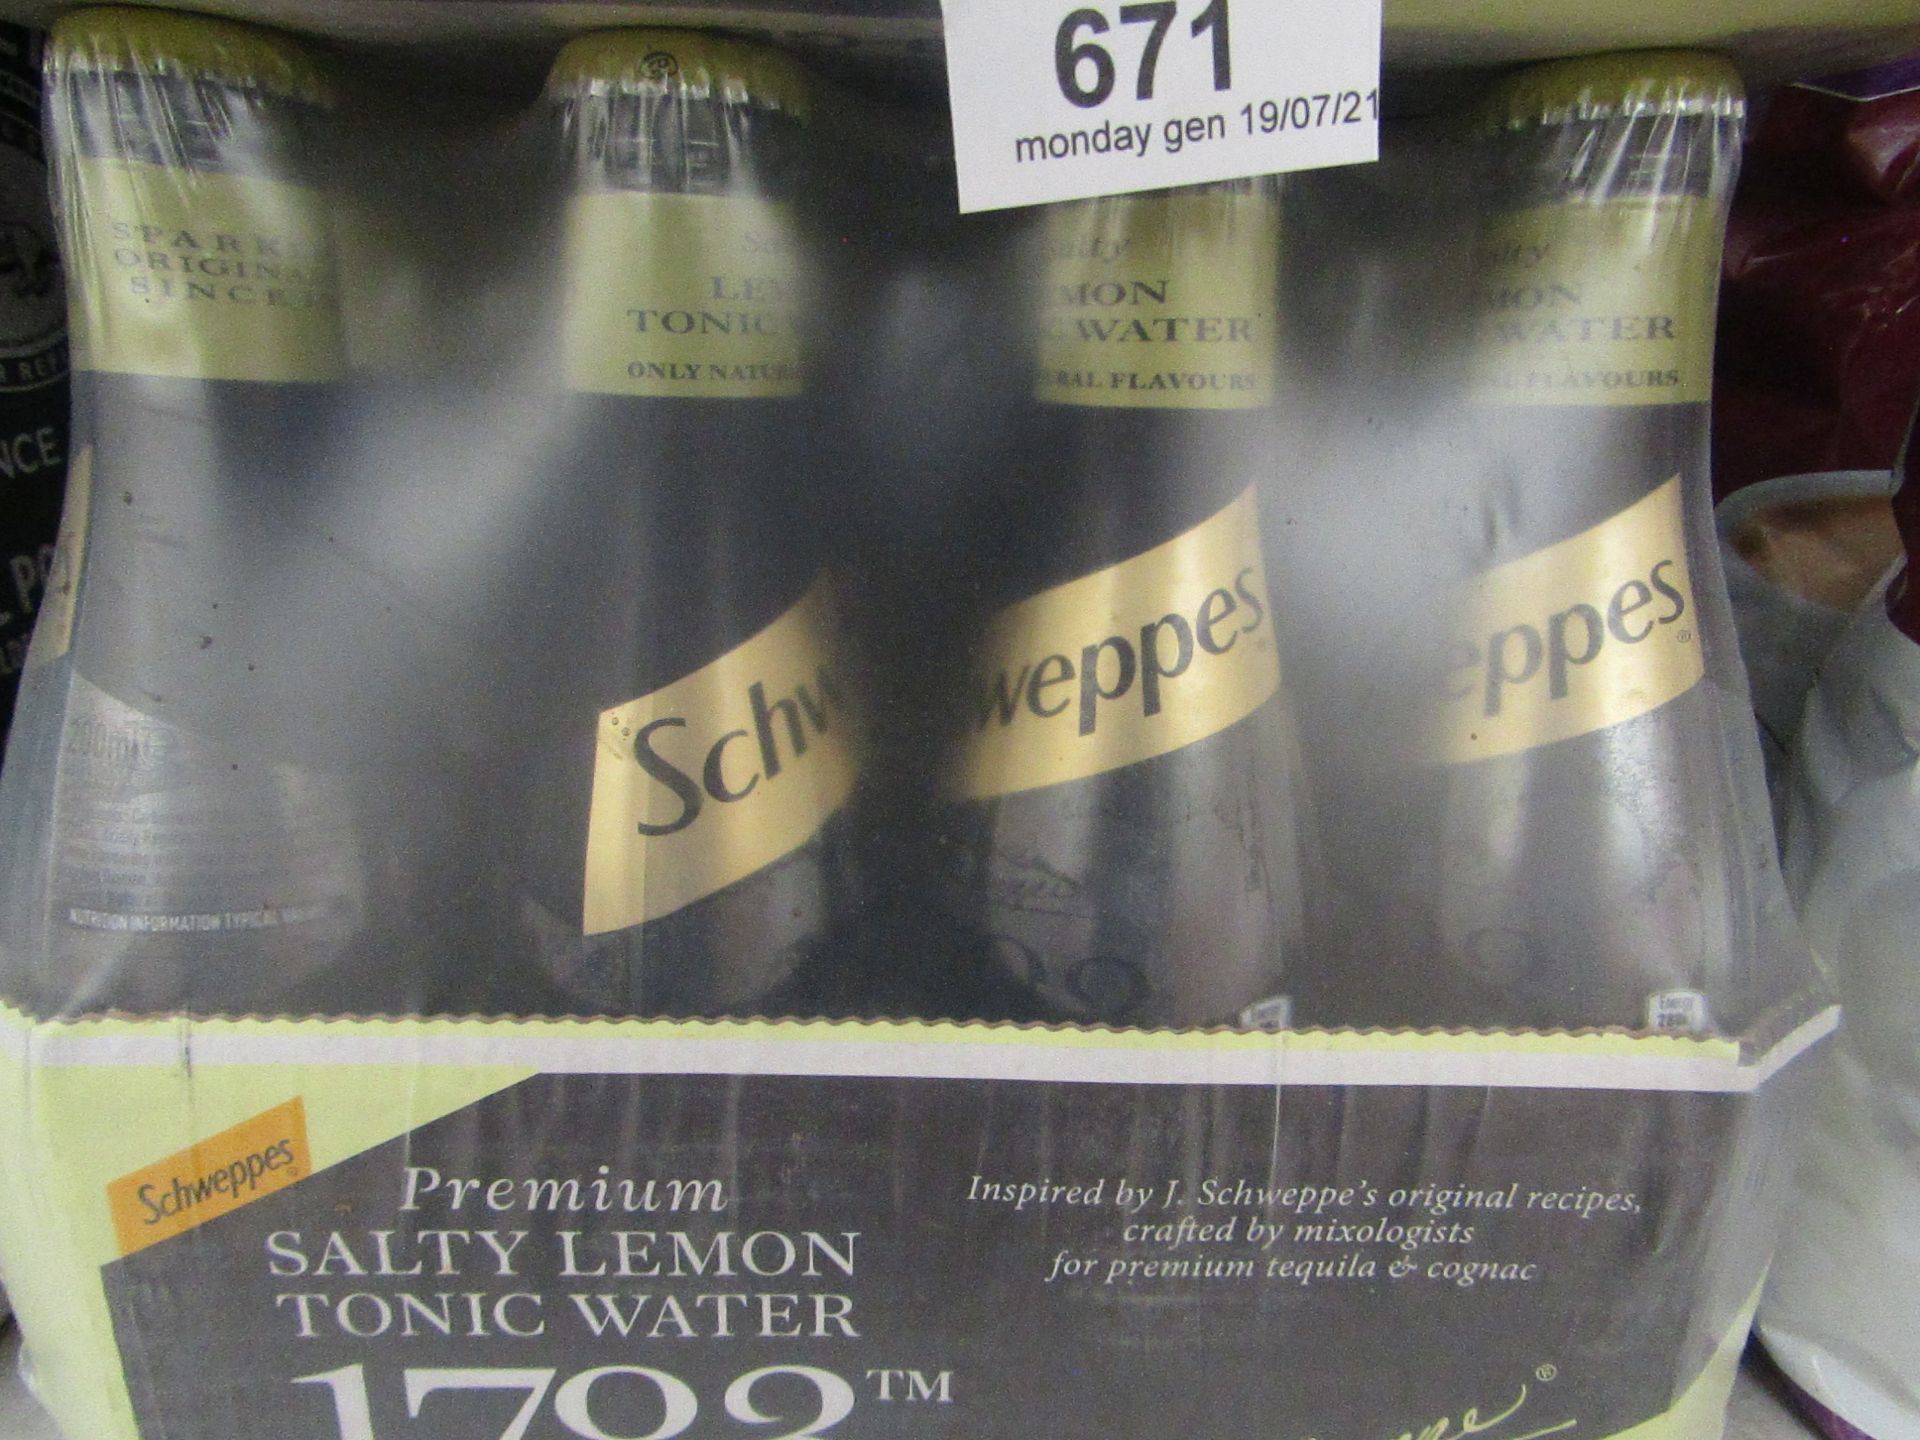 12 Pack of Schweppes - Salty Lemon Tonic Water - 200ml - BBD 31-08-20 - Unused & Packaged.